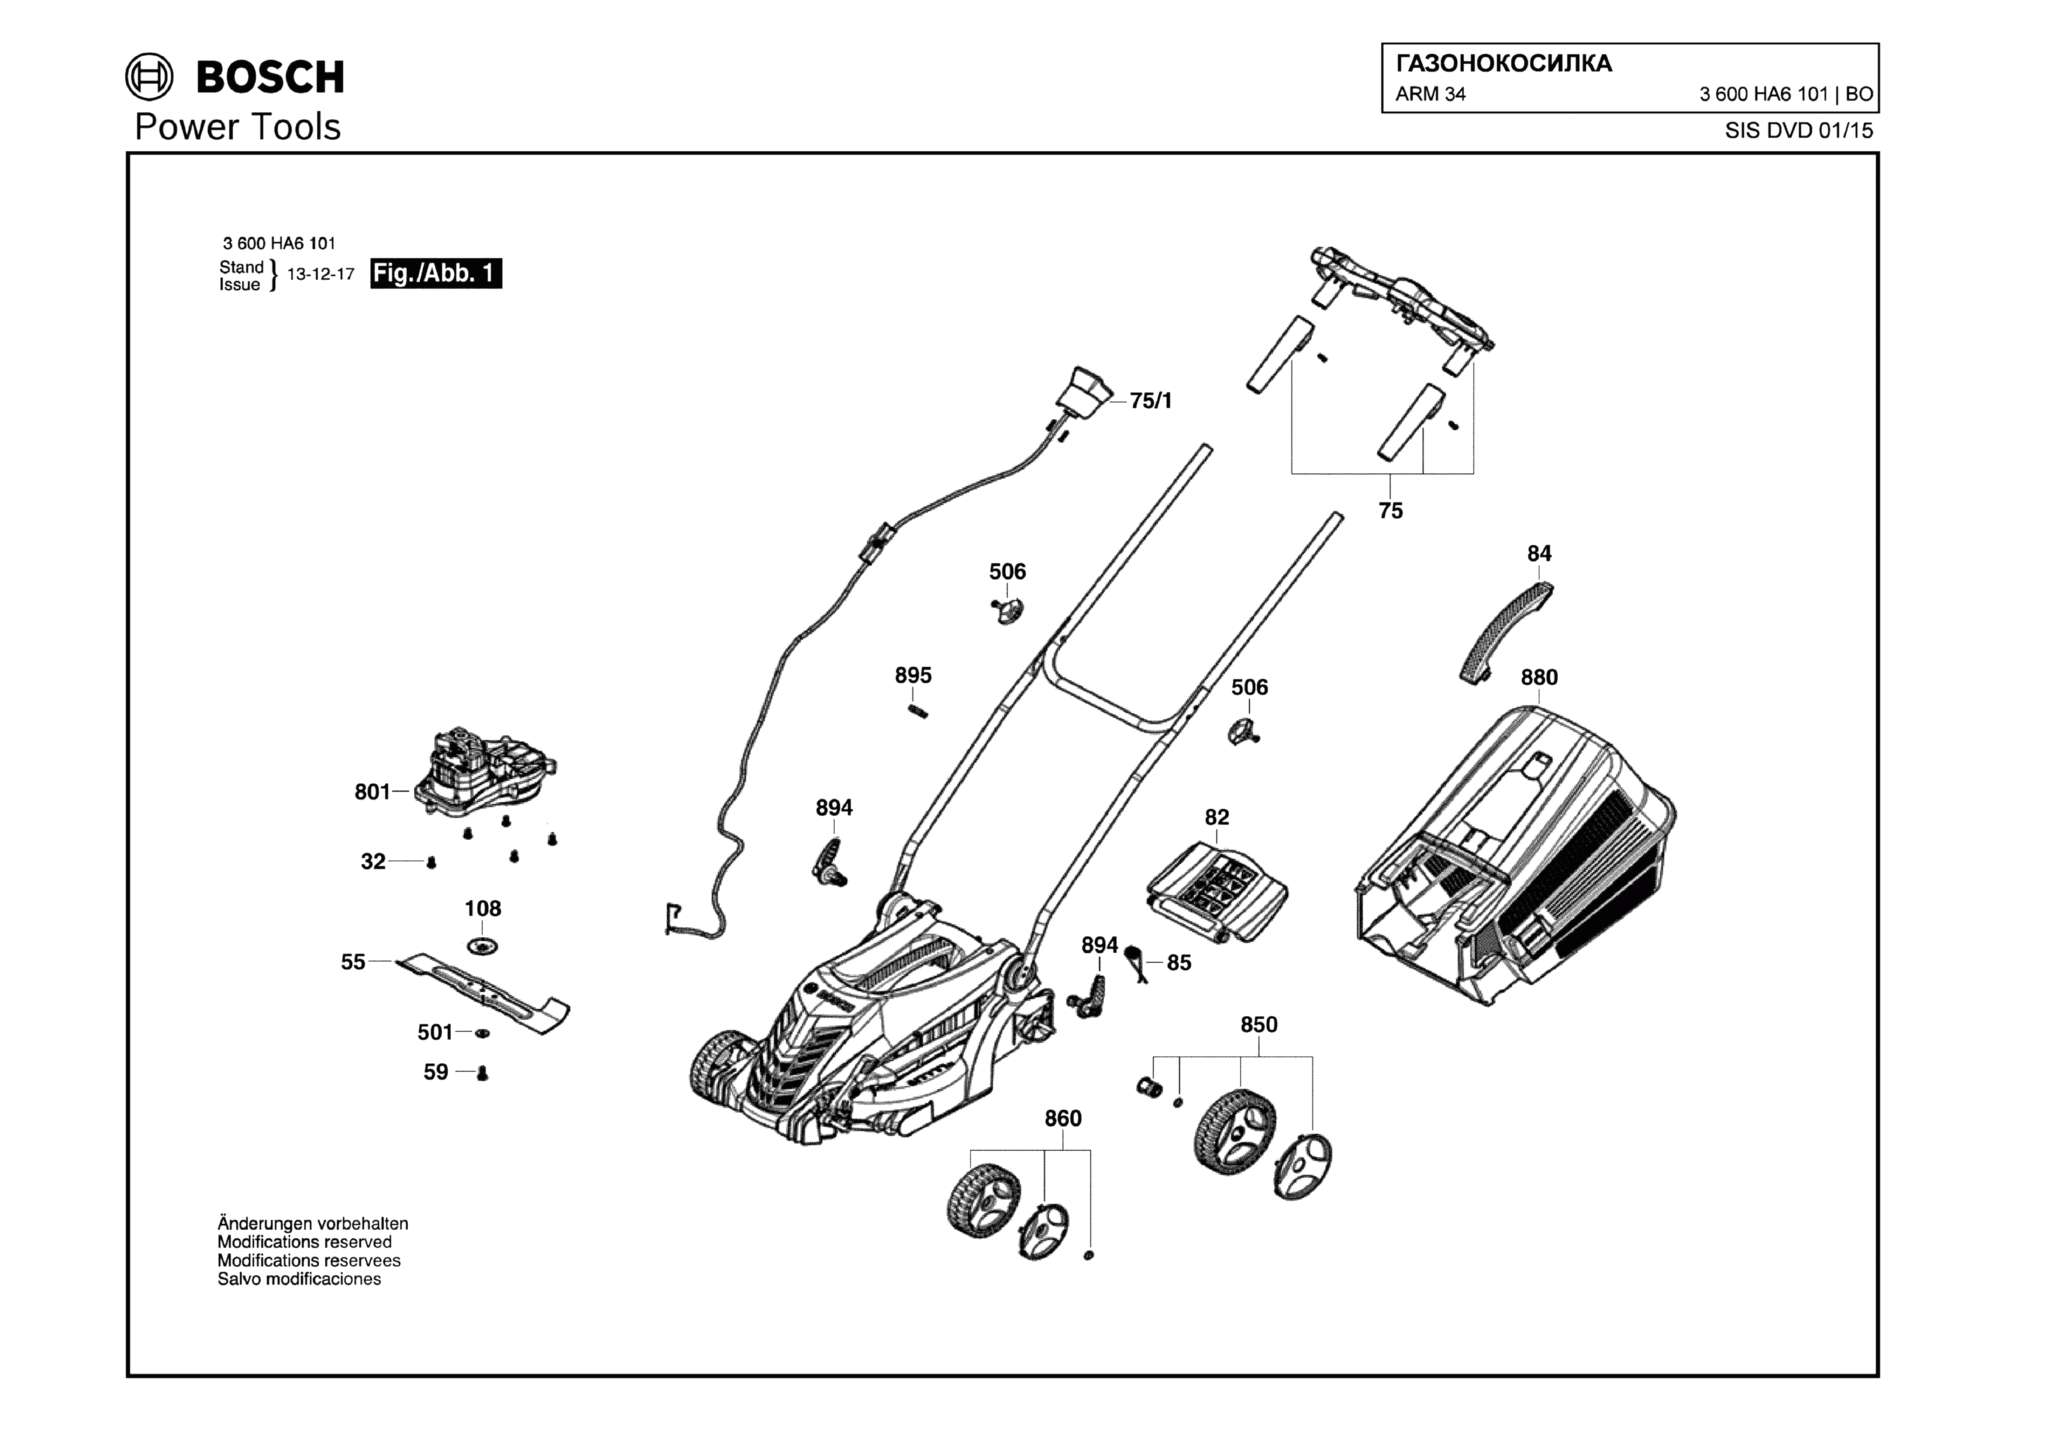 Запчасти, схема и деталировка Bosch ARM 34 (ТИП 3600HA6101)